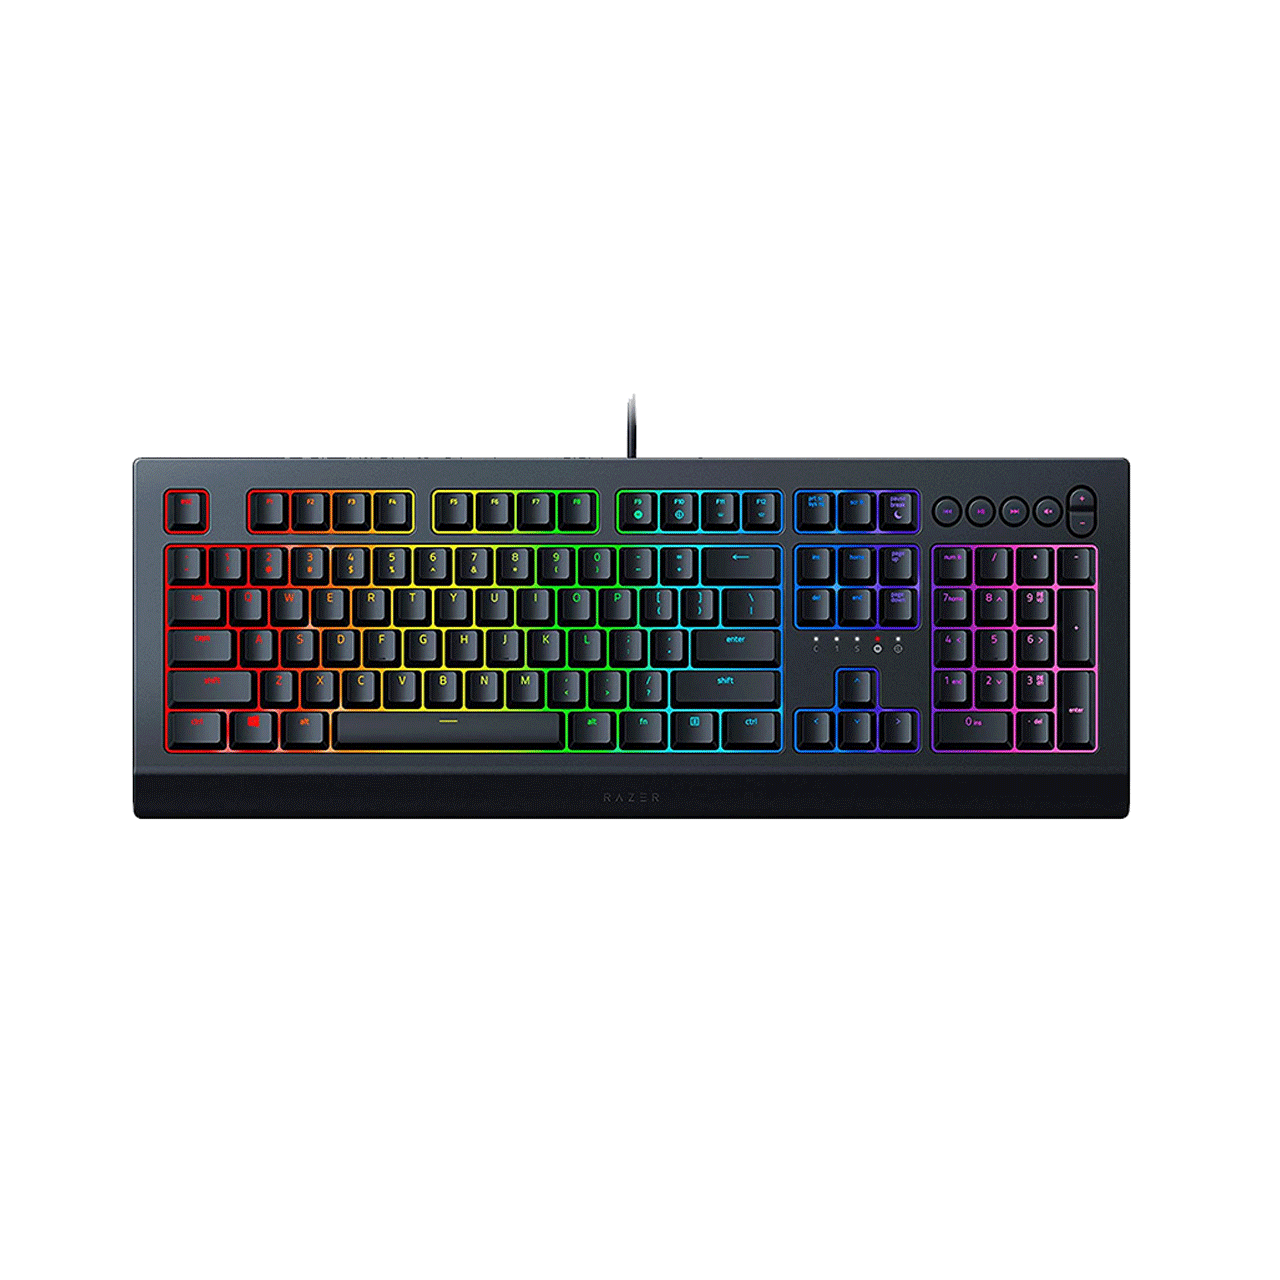 Razer-Cynosa-V2-Wired-RGB-Gaming-Keyboard